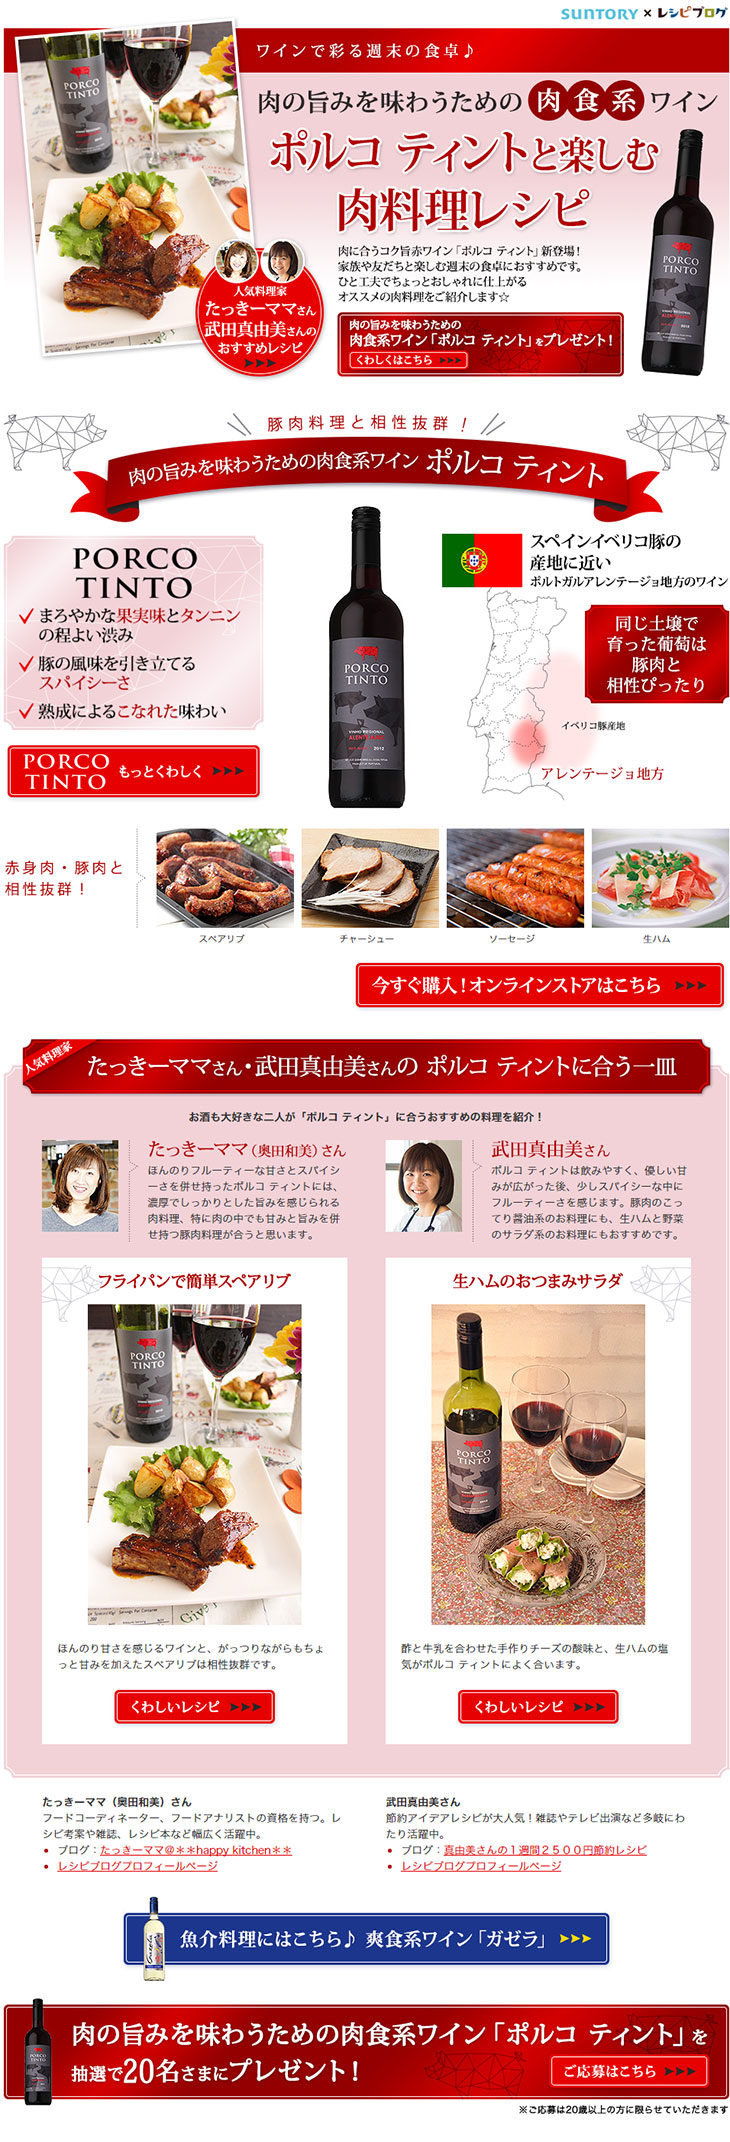 SUNTORYワインと楽しむ肉料理レシピ_pc_1